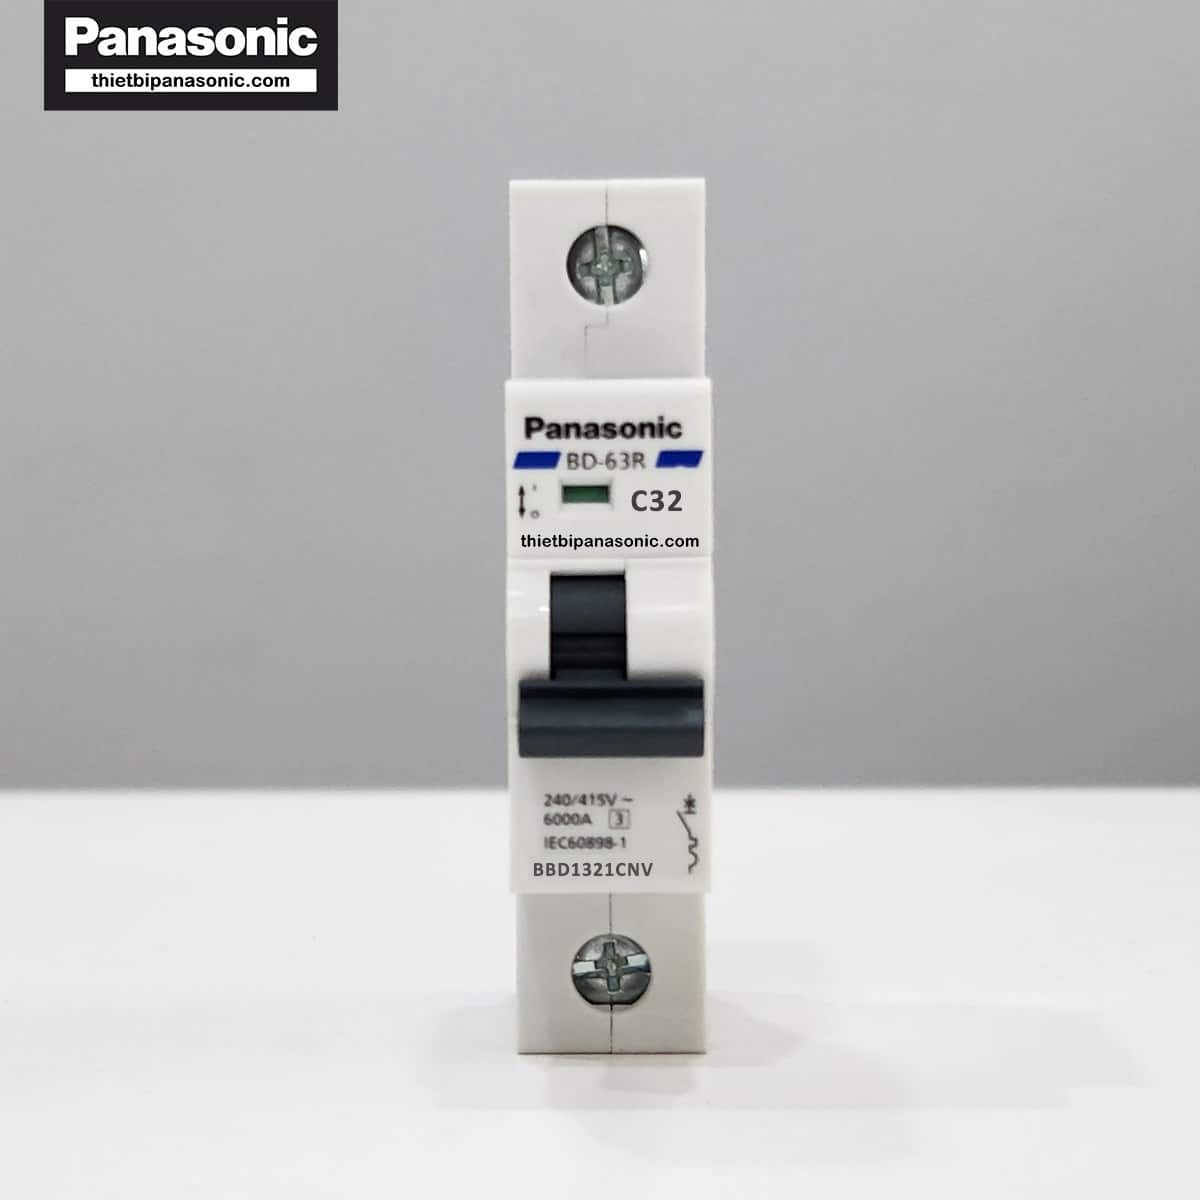 MCB 1P 32A 6kA Panasonic ở trạng thái tắt (dấu hiệu nhận biết màu xanh)